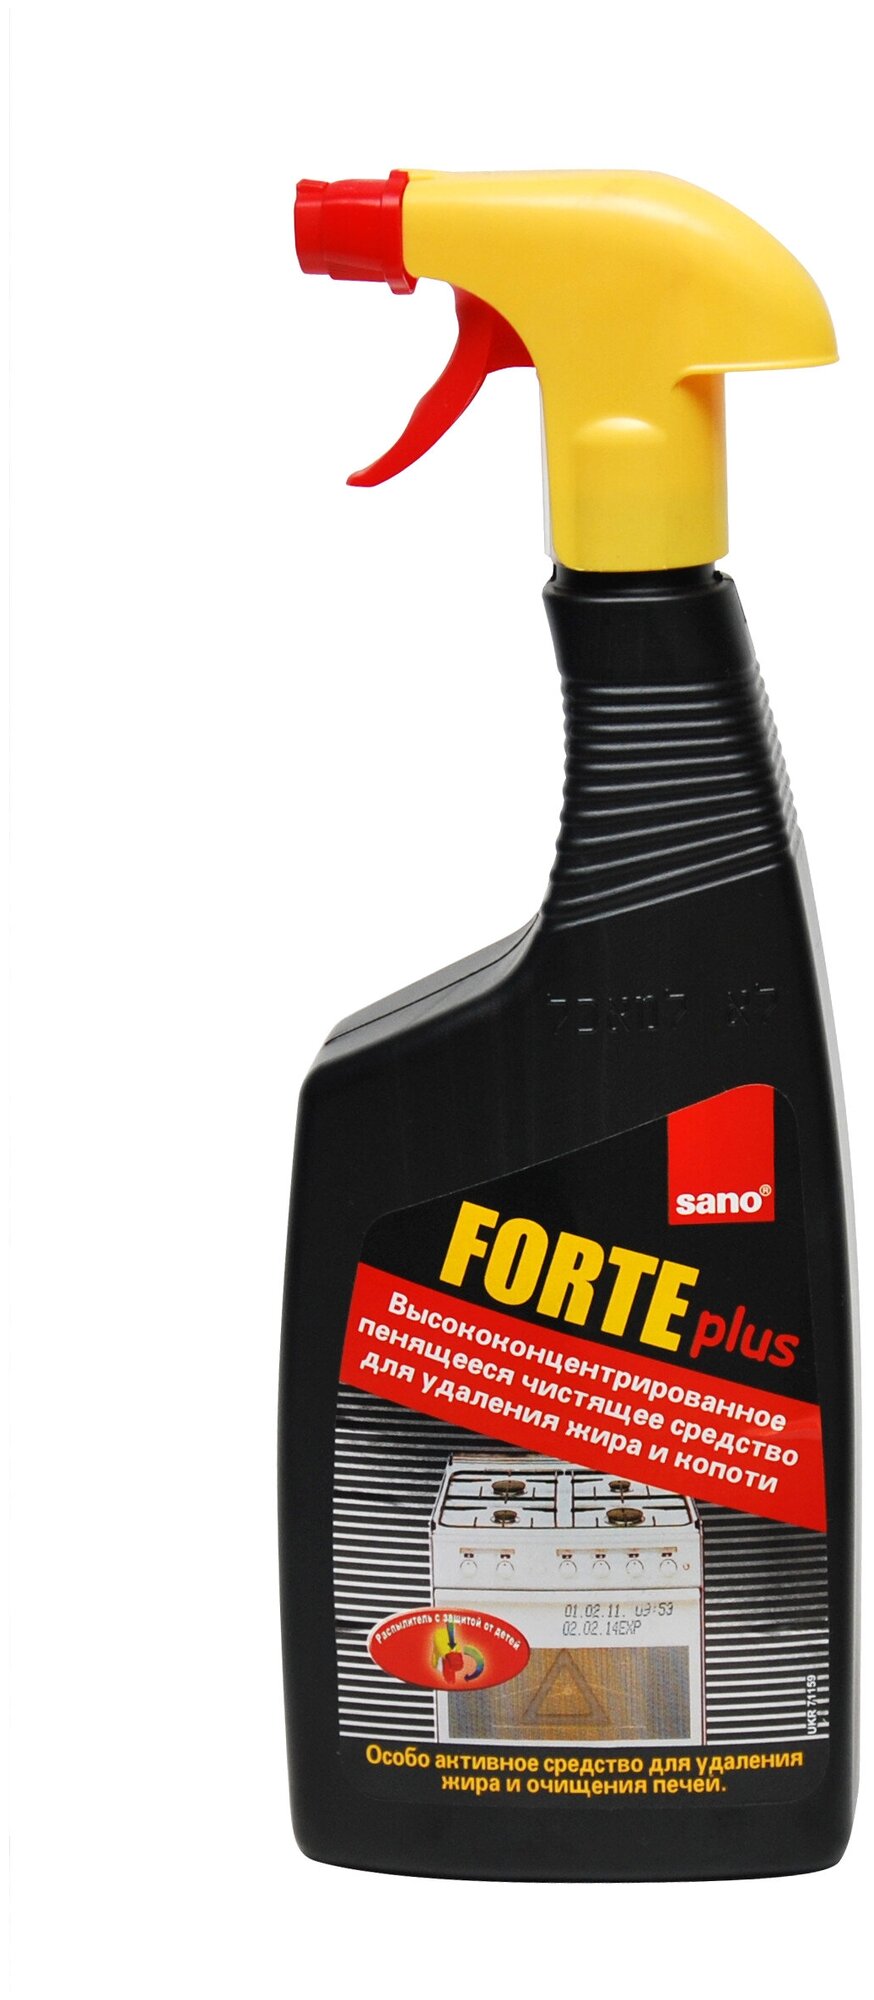 Чистящий спрей Sano Forte Plus для удаления жира и гари, высококонцентрированный, 750 мл